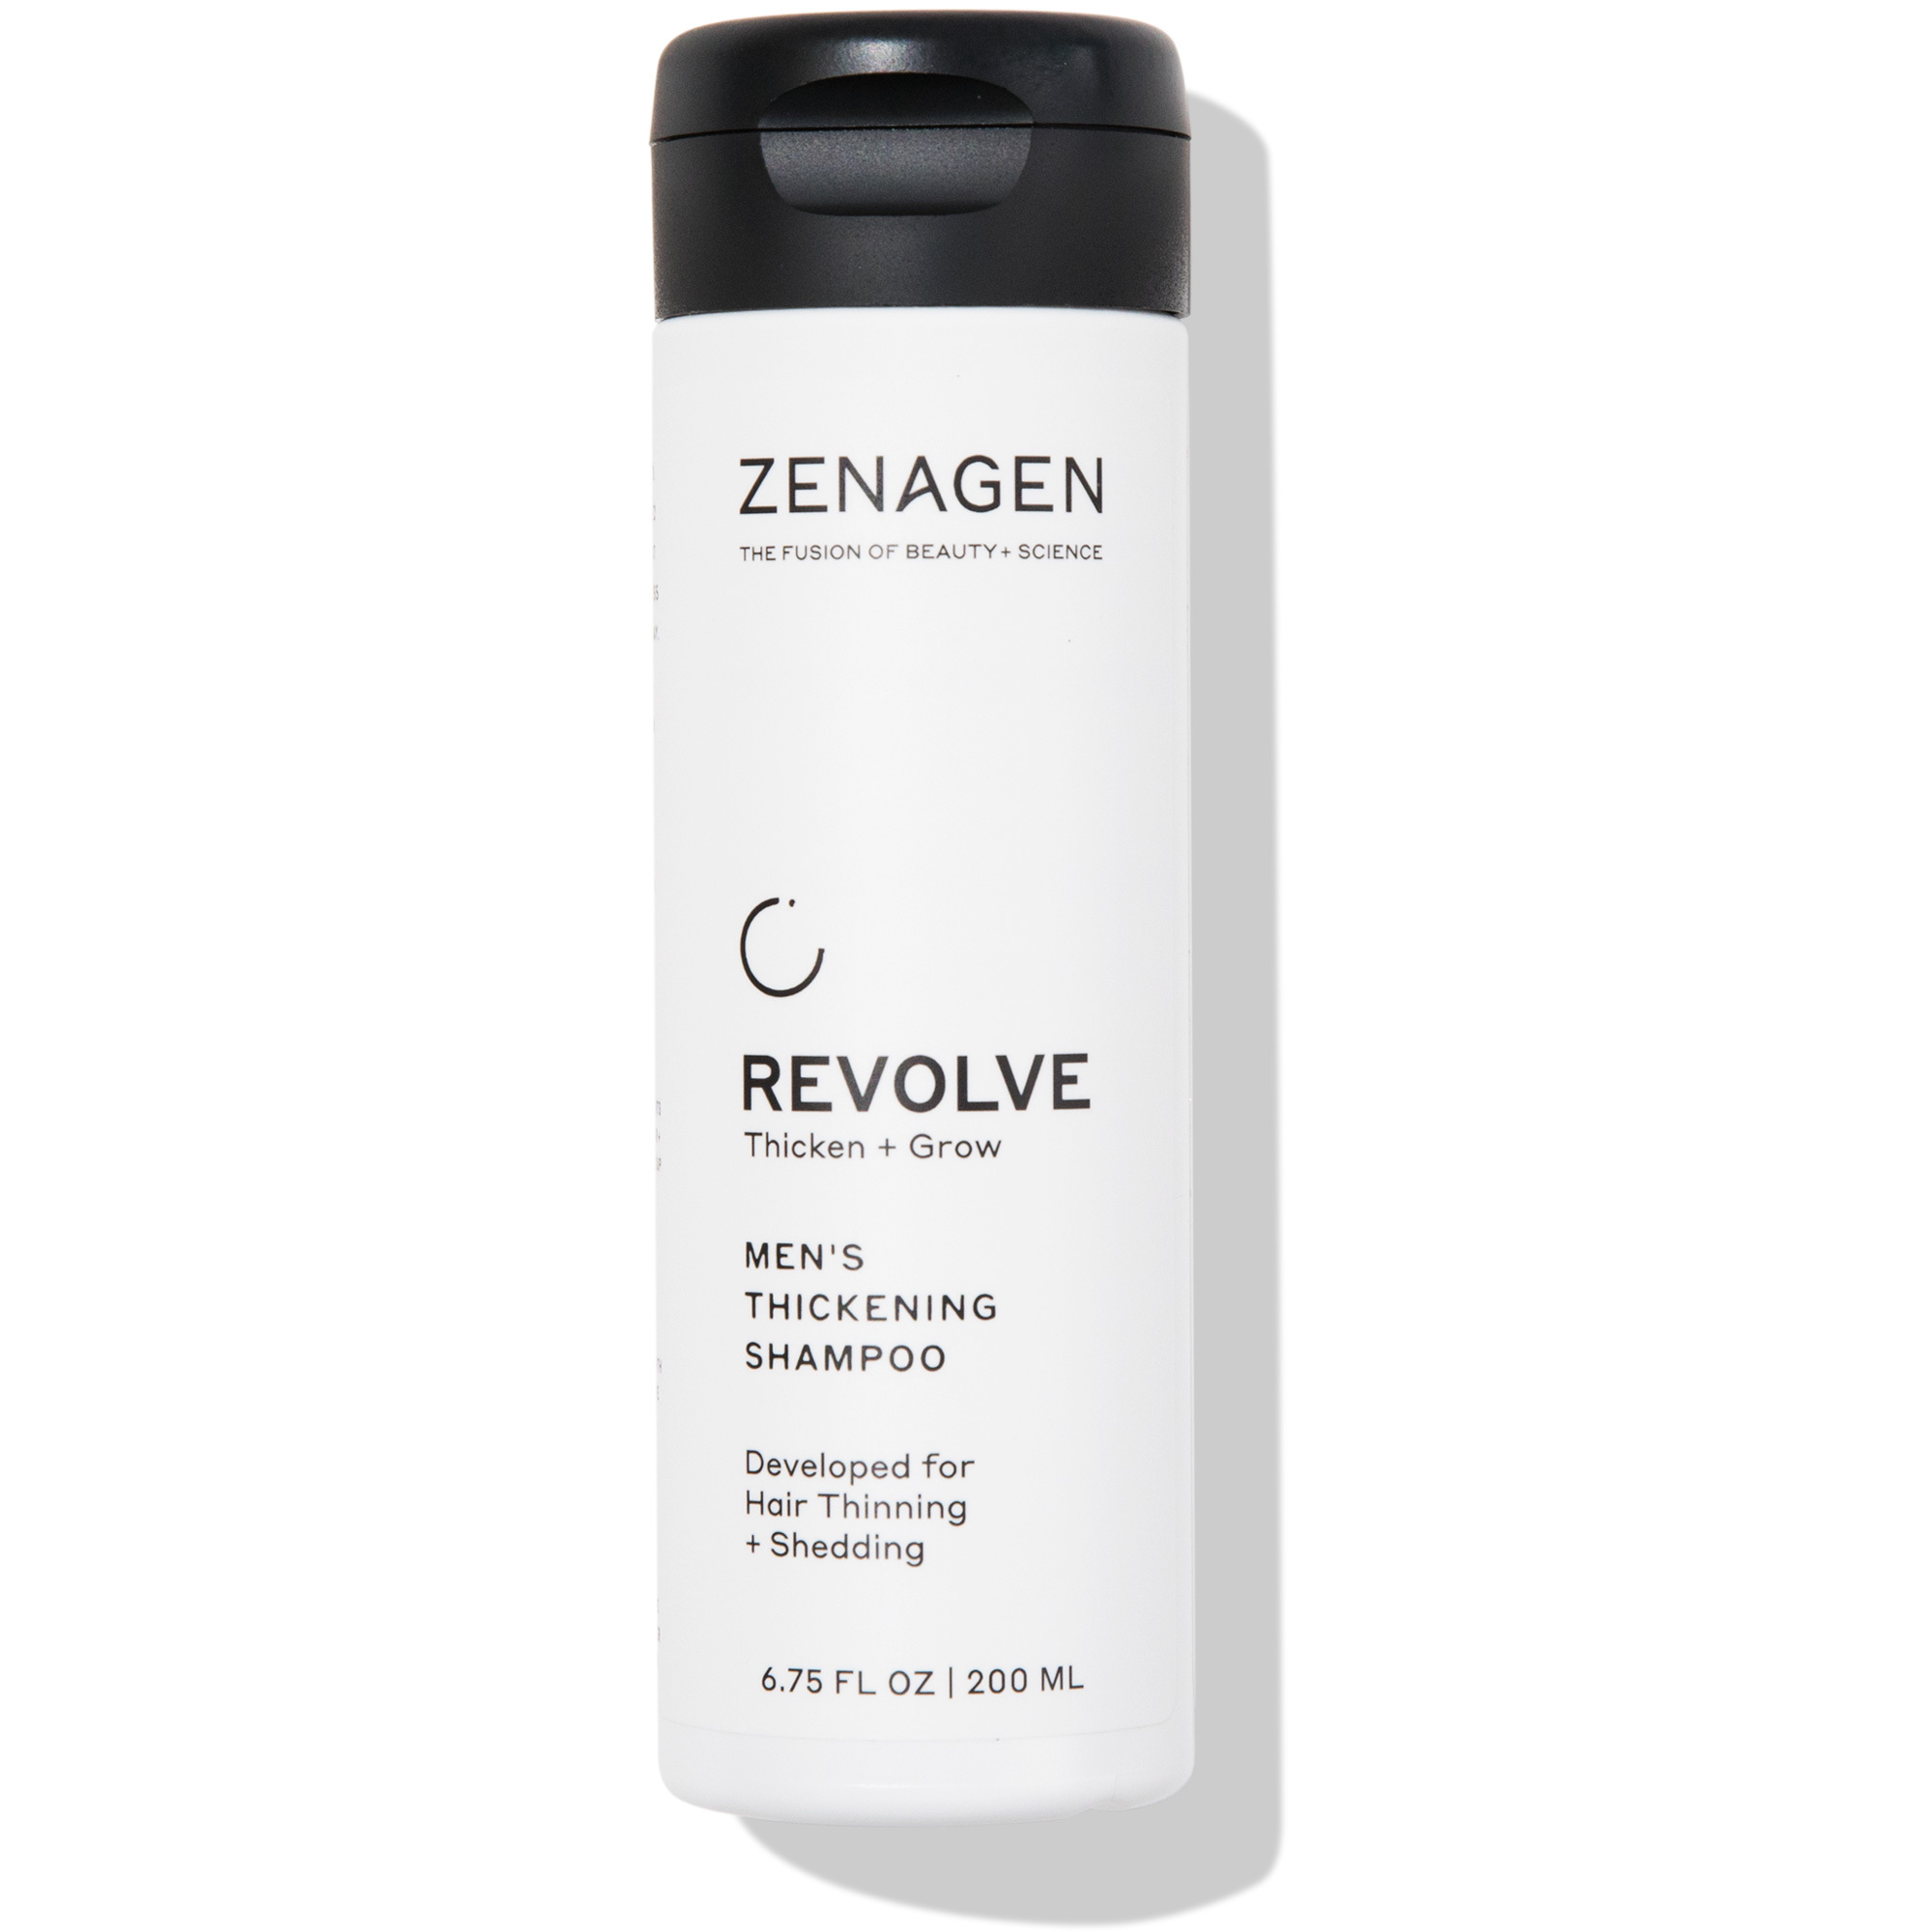 Zenagen Revolve Thicken + Grow Thickening Shampoo - Men